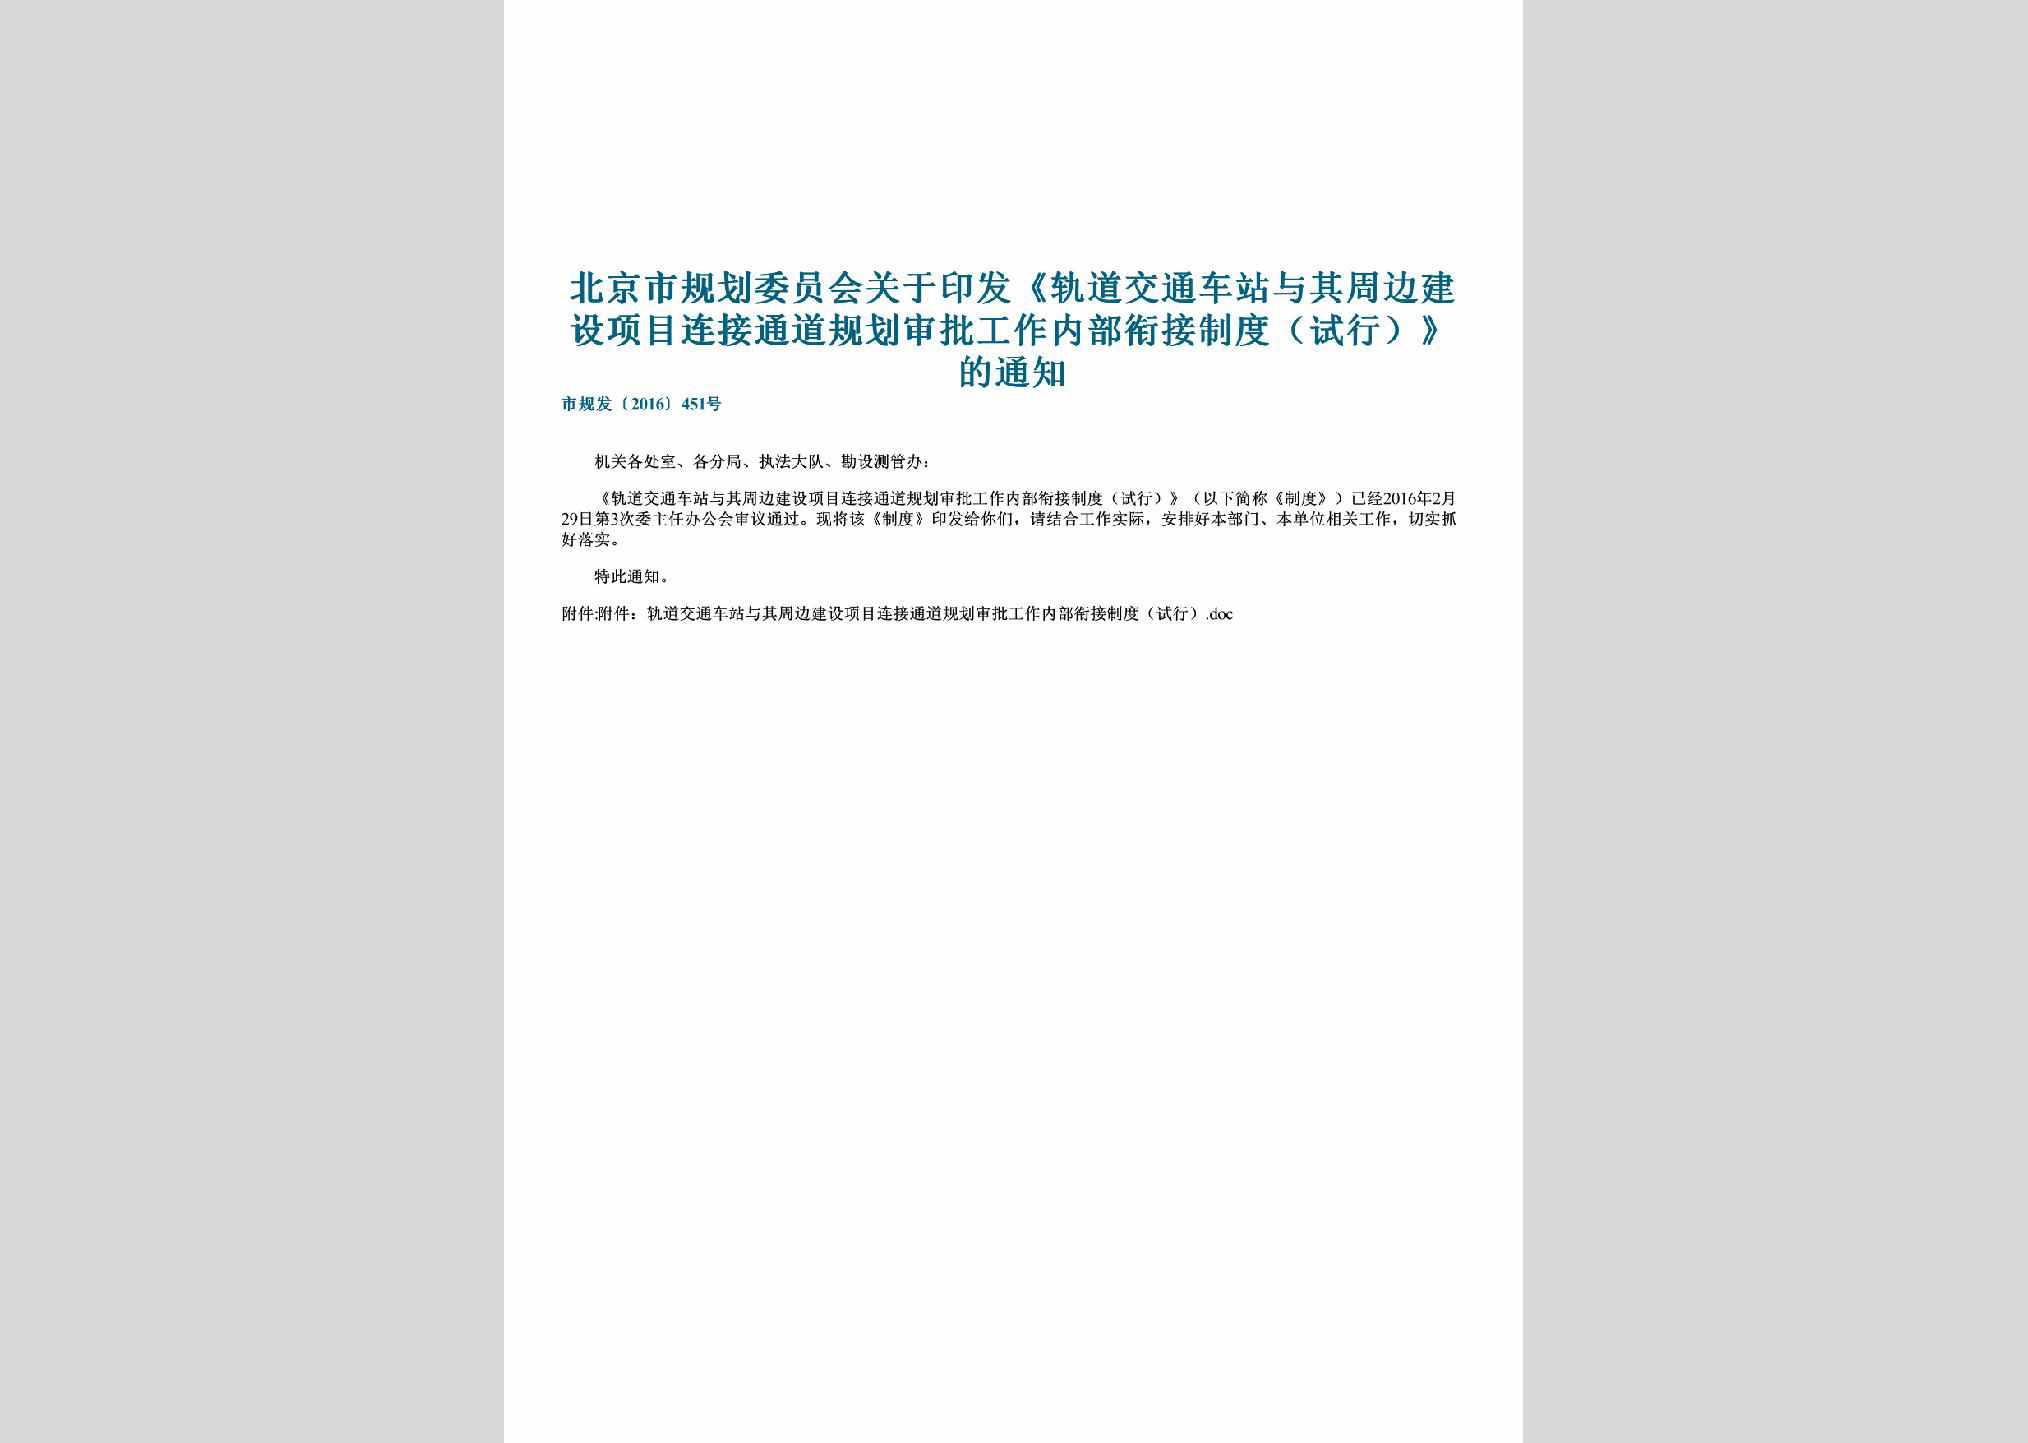 市规发[2016]451号：北京市规划委员会关于印发《轨道交通车站与其周边建设项目连接通道规划审批工作内部衔接制度（试行）》的通知